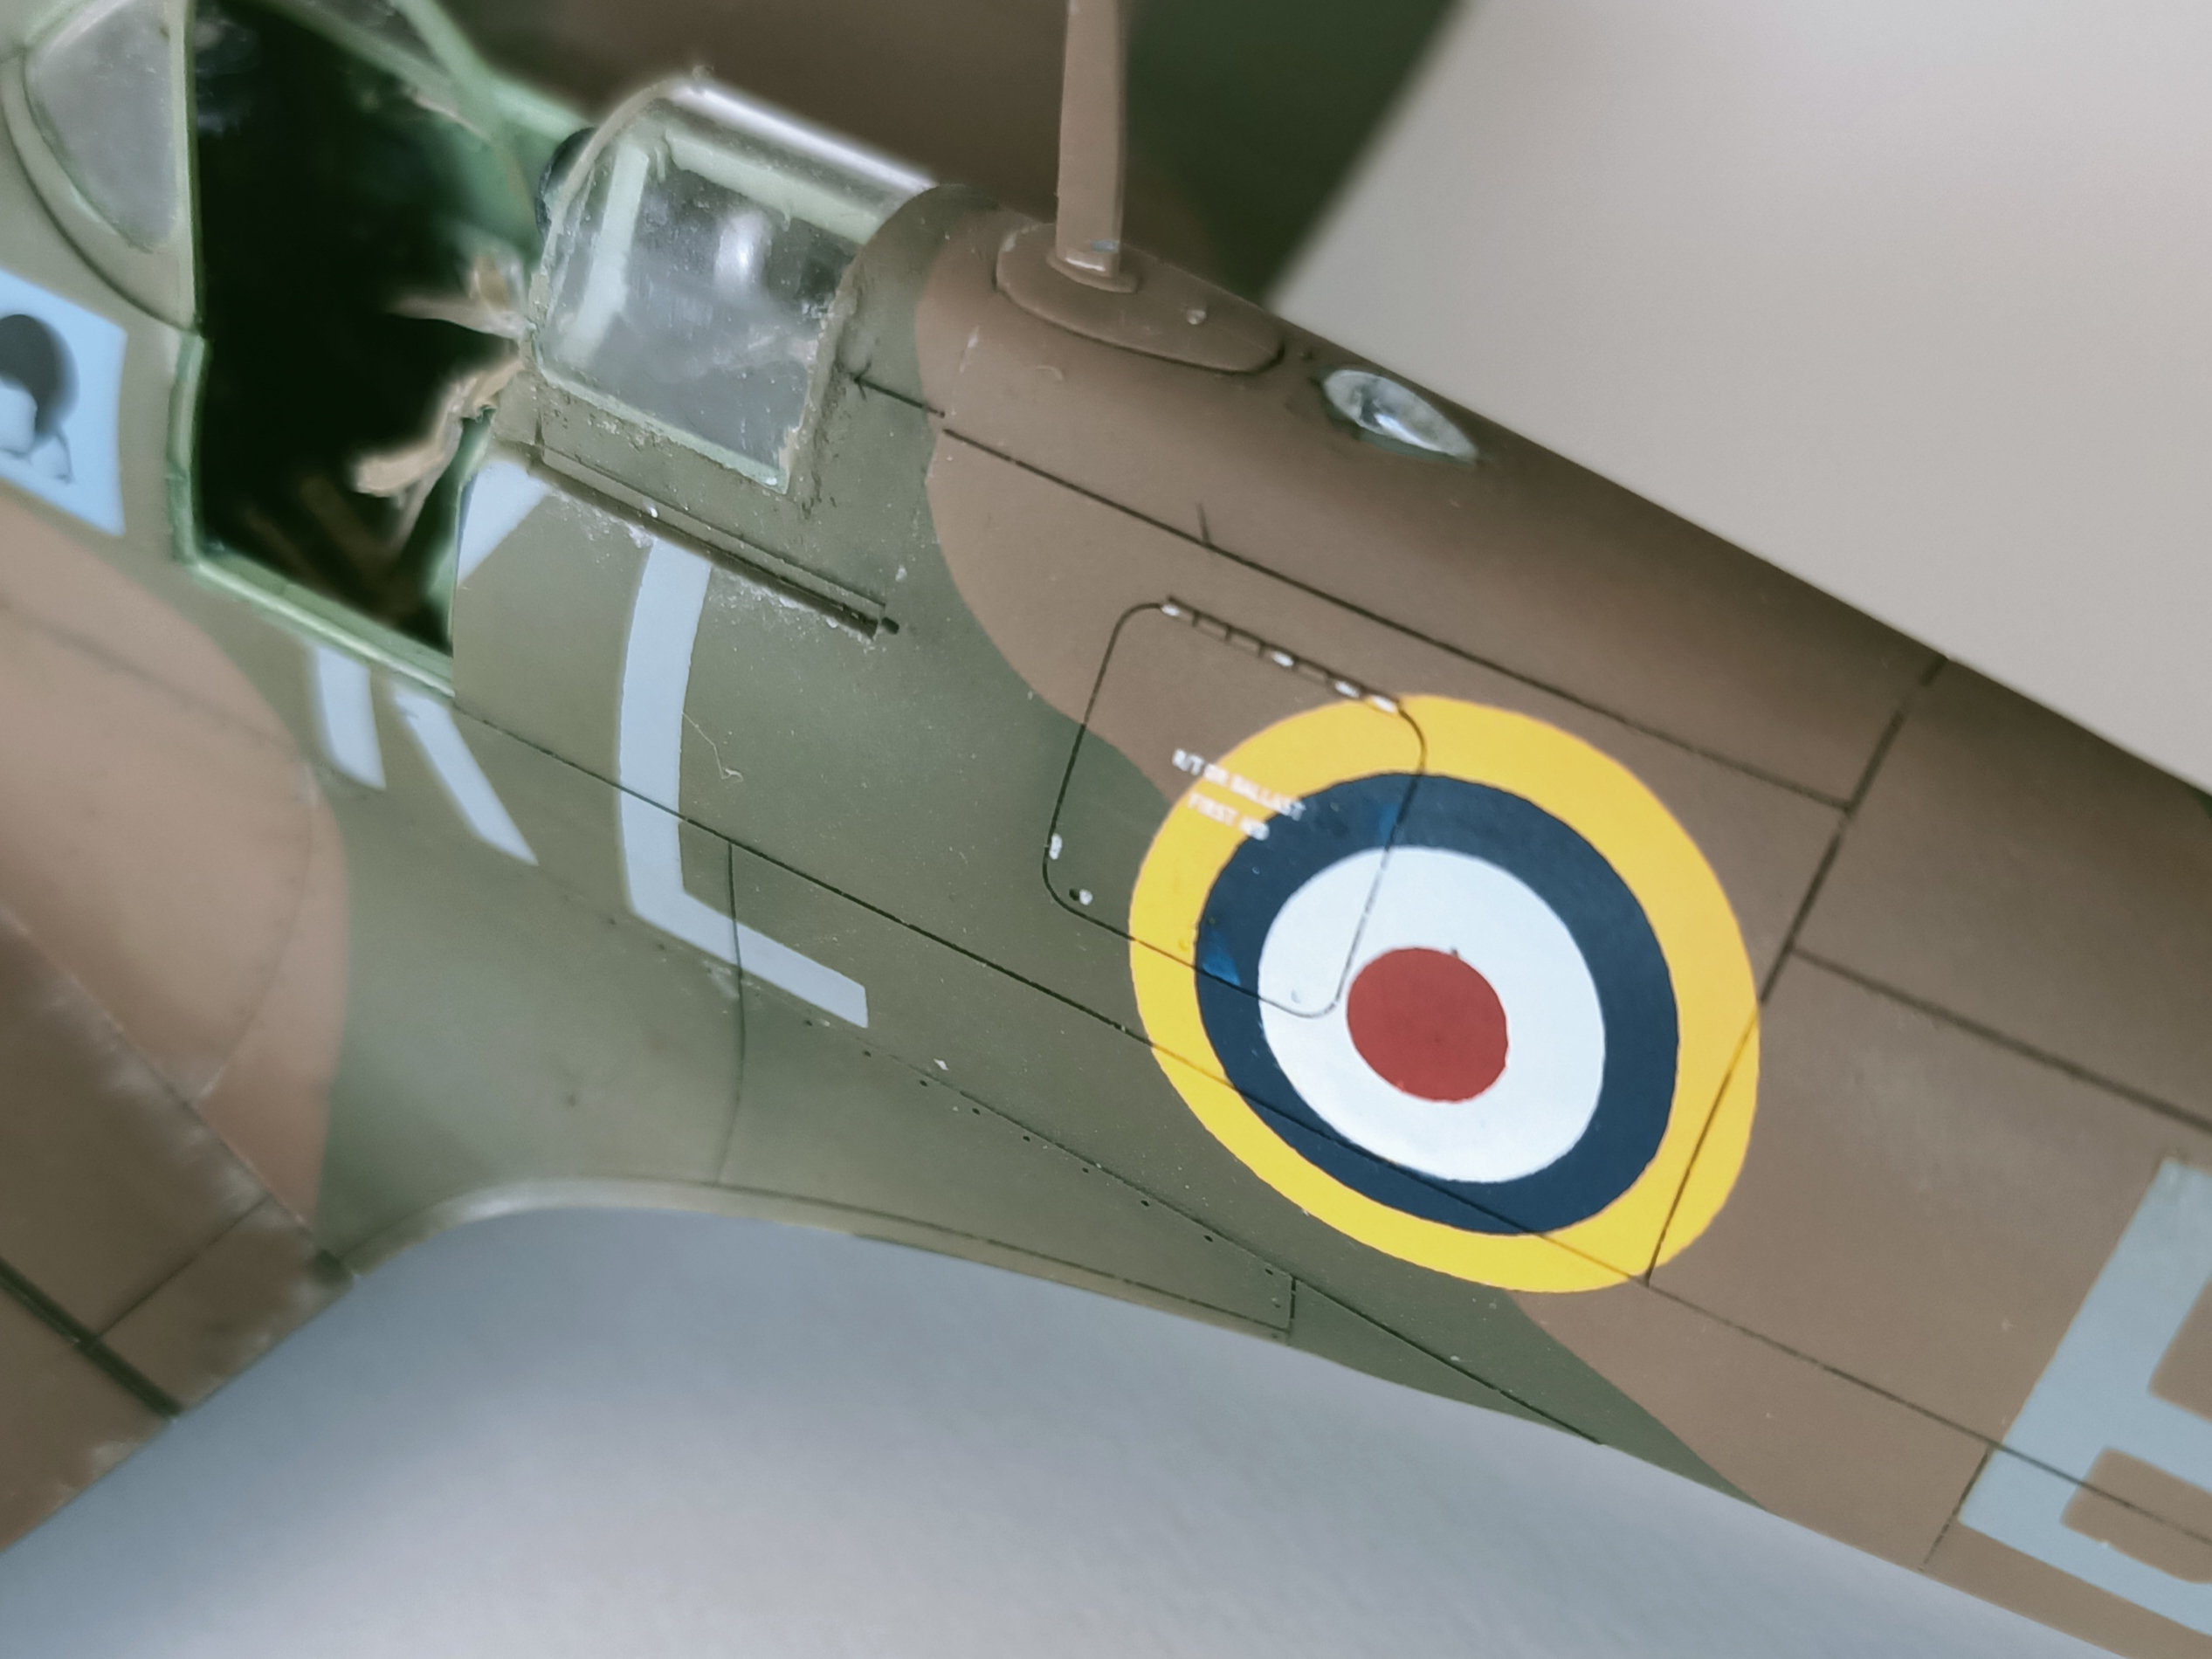 [Tamiya] 1/48 - Supermarine Spitfire Mk I  - Page 2 2303120304028762618132064